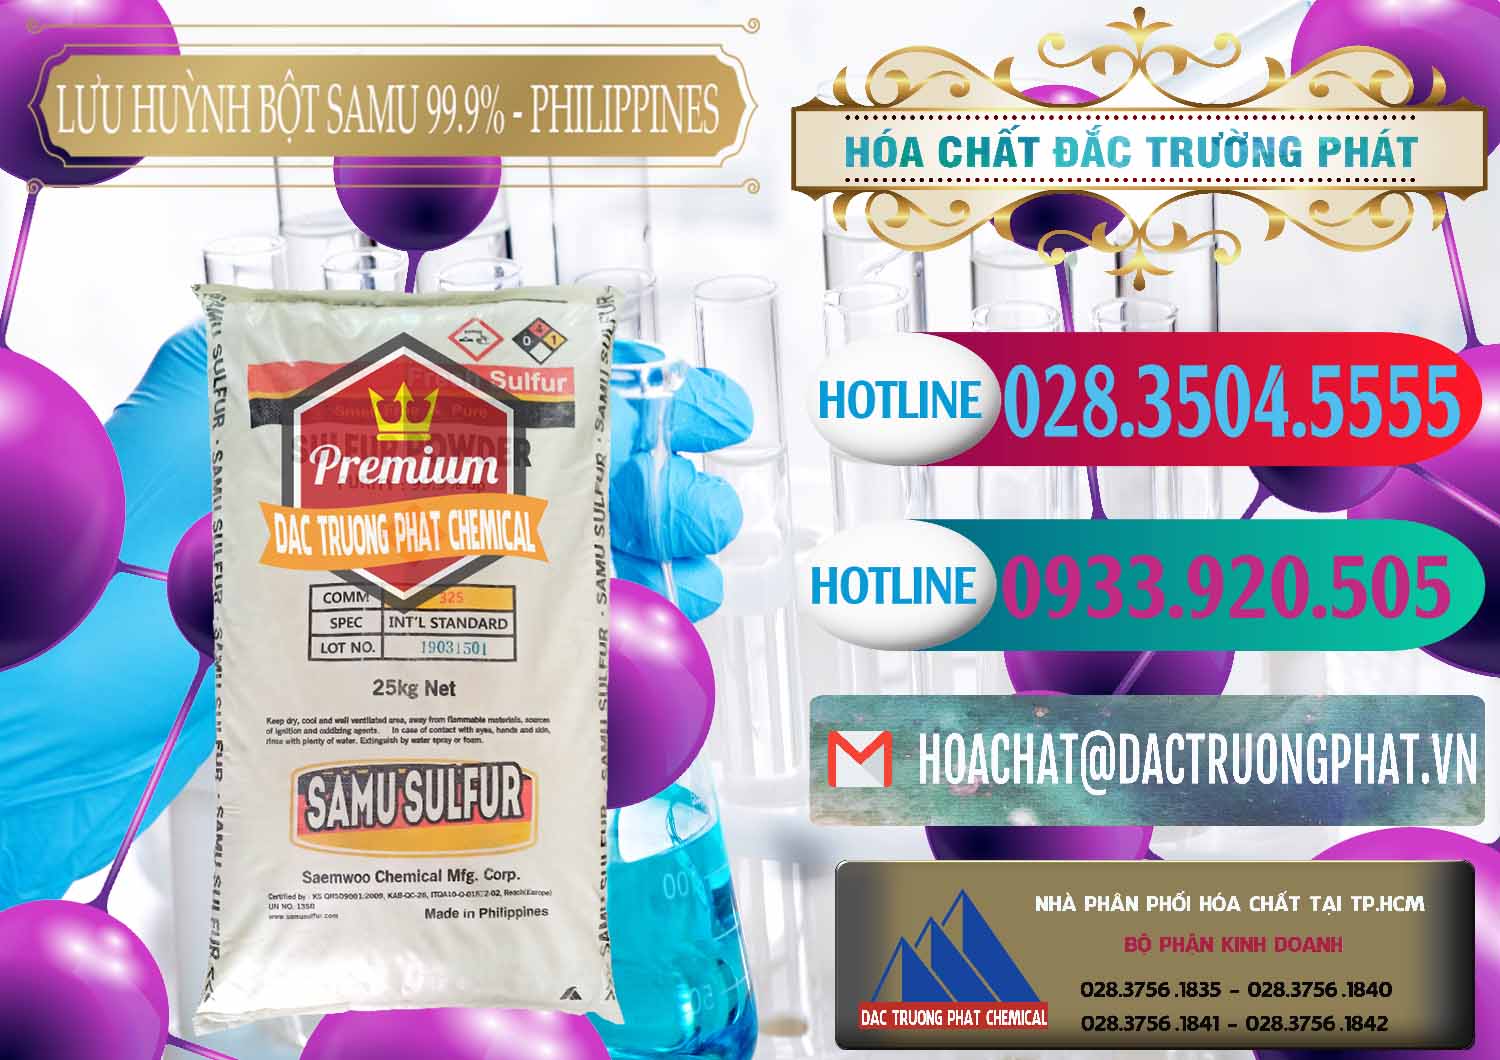 Công ty chuyên phân phối - bán Lưu huỳnh Bột - Sulfur Powder Samu Philippines - 0201 - Đơn vị bán & phân phối hóa chất tại TP.HCM - truongphat.vn